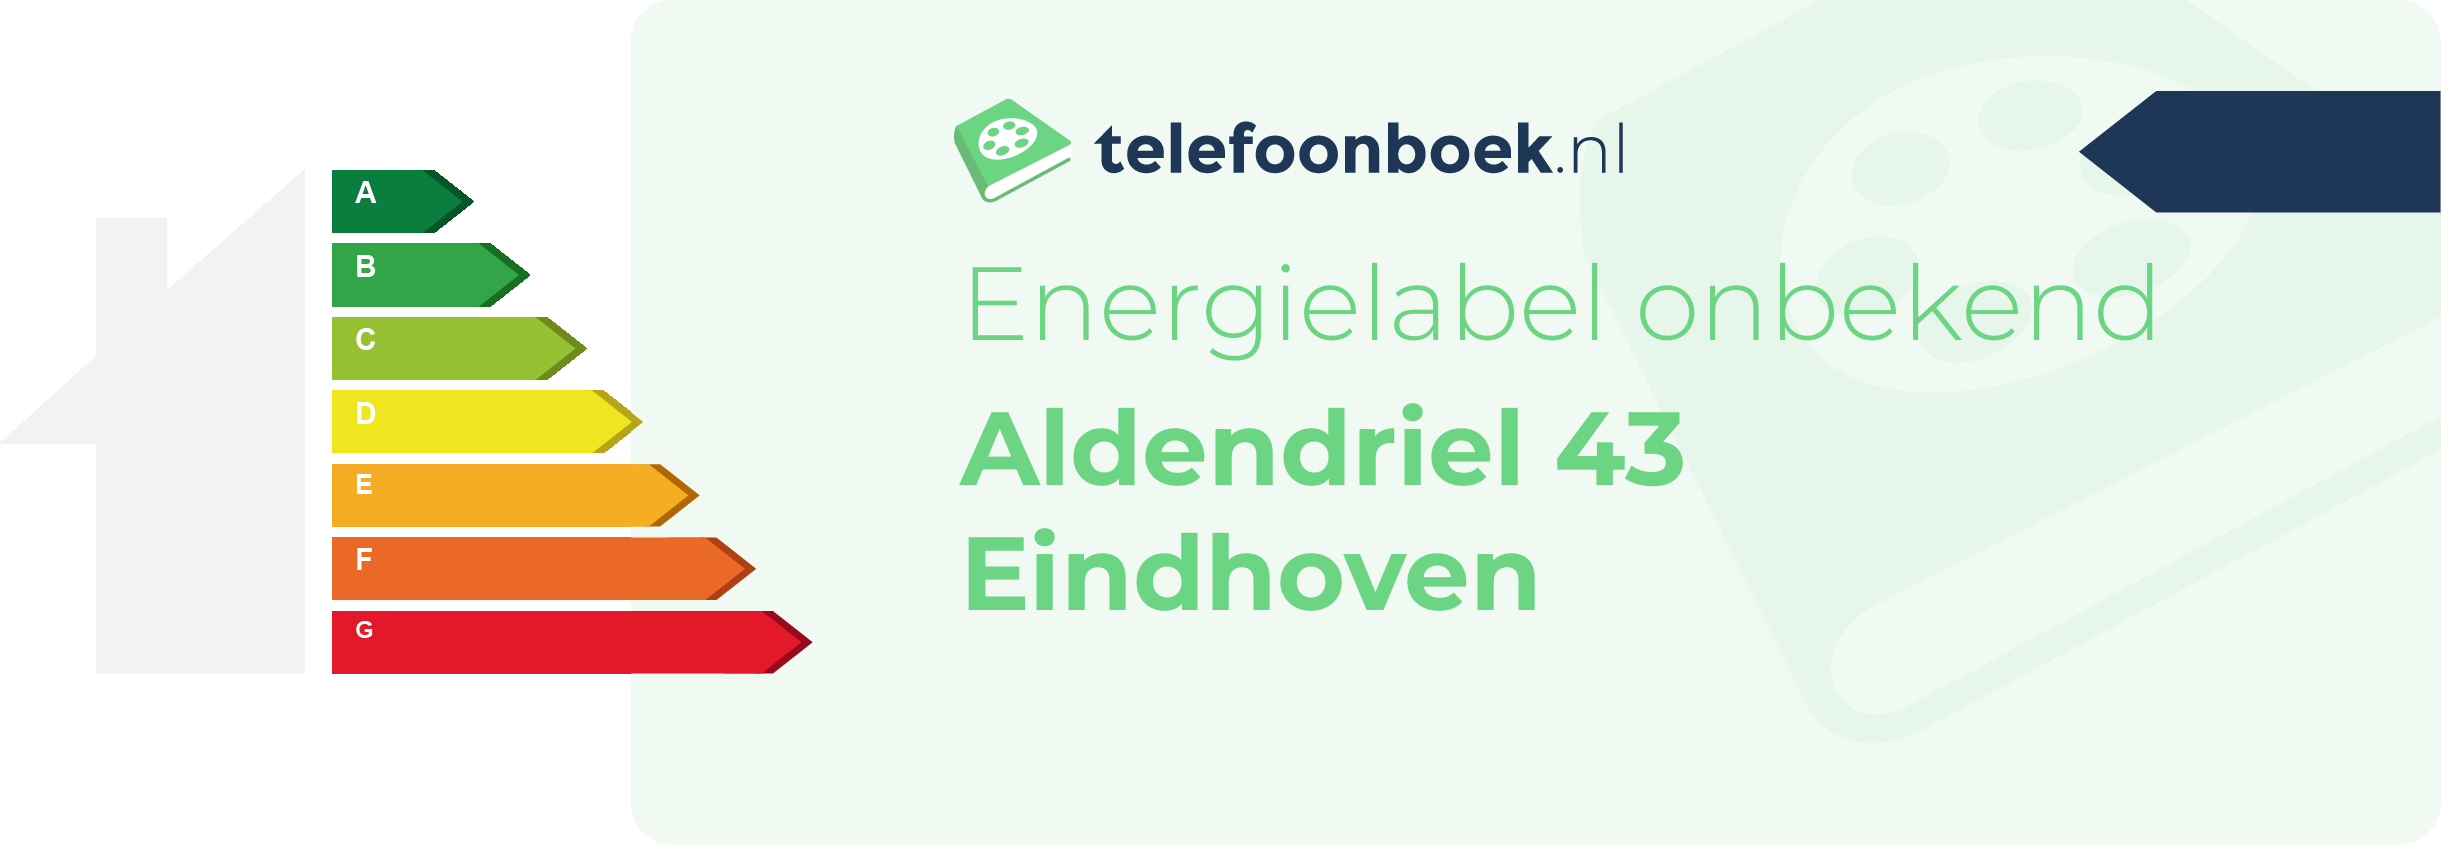 Energielabel Aldendriel 43 Eindhoven